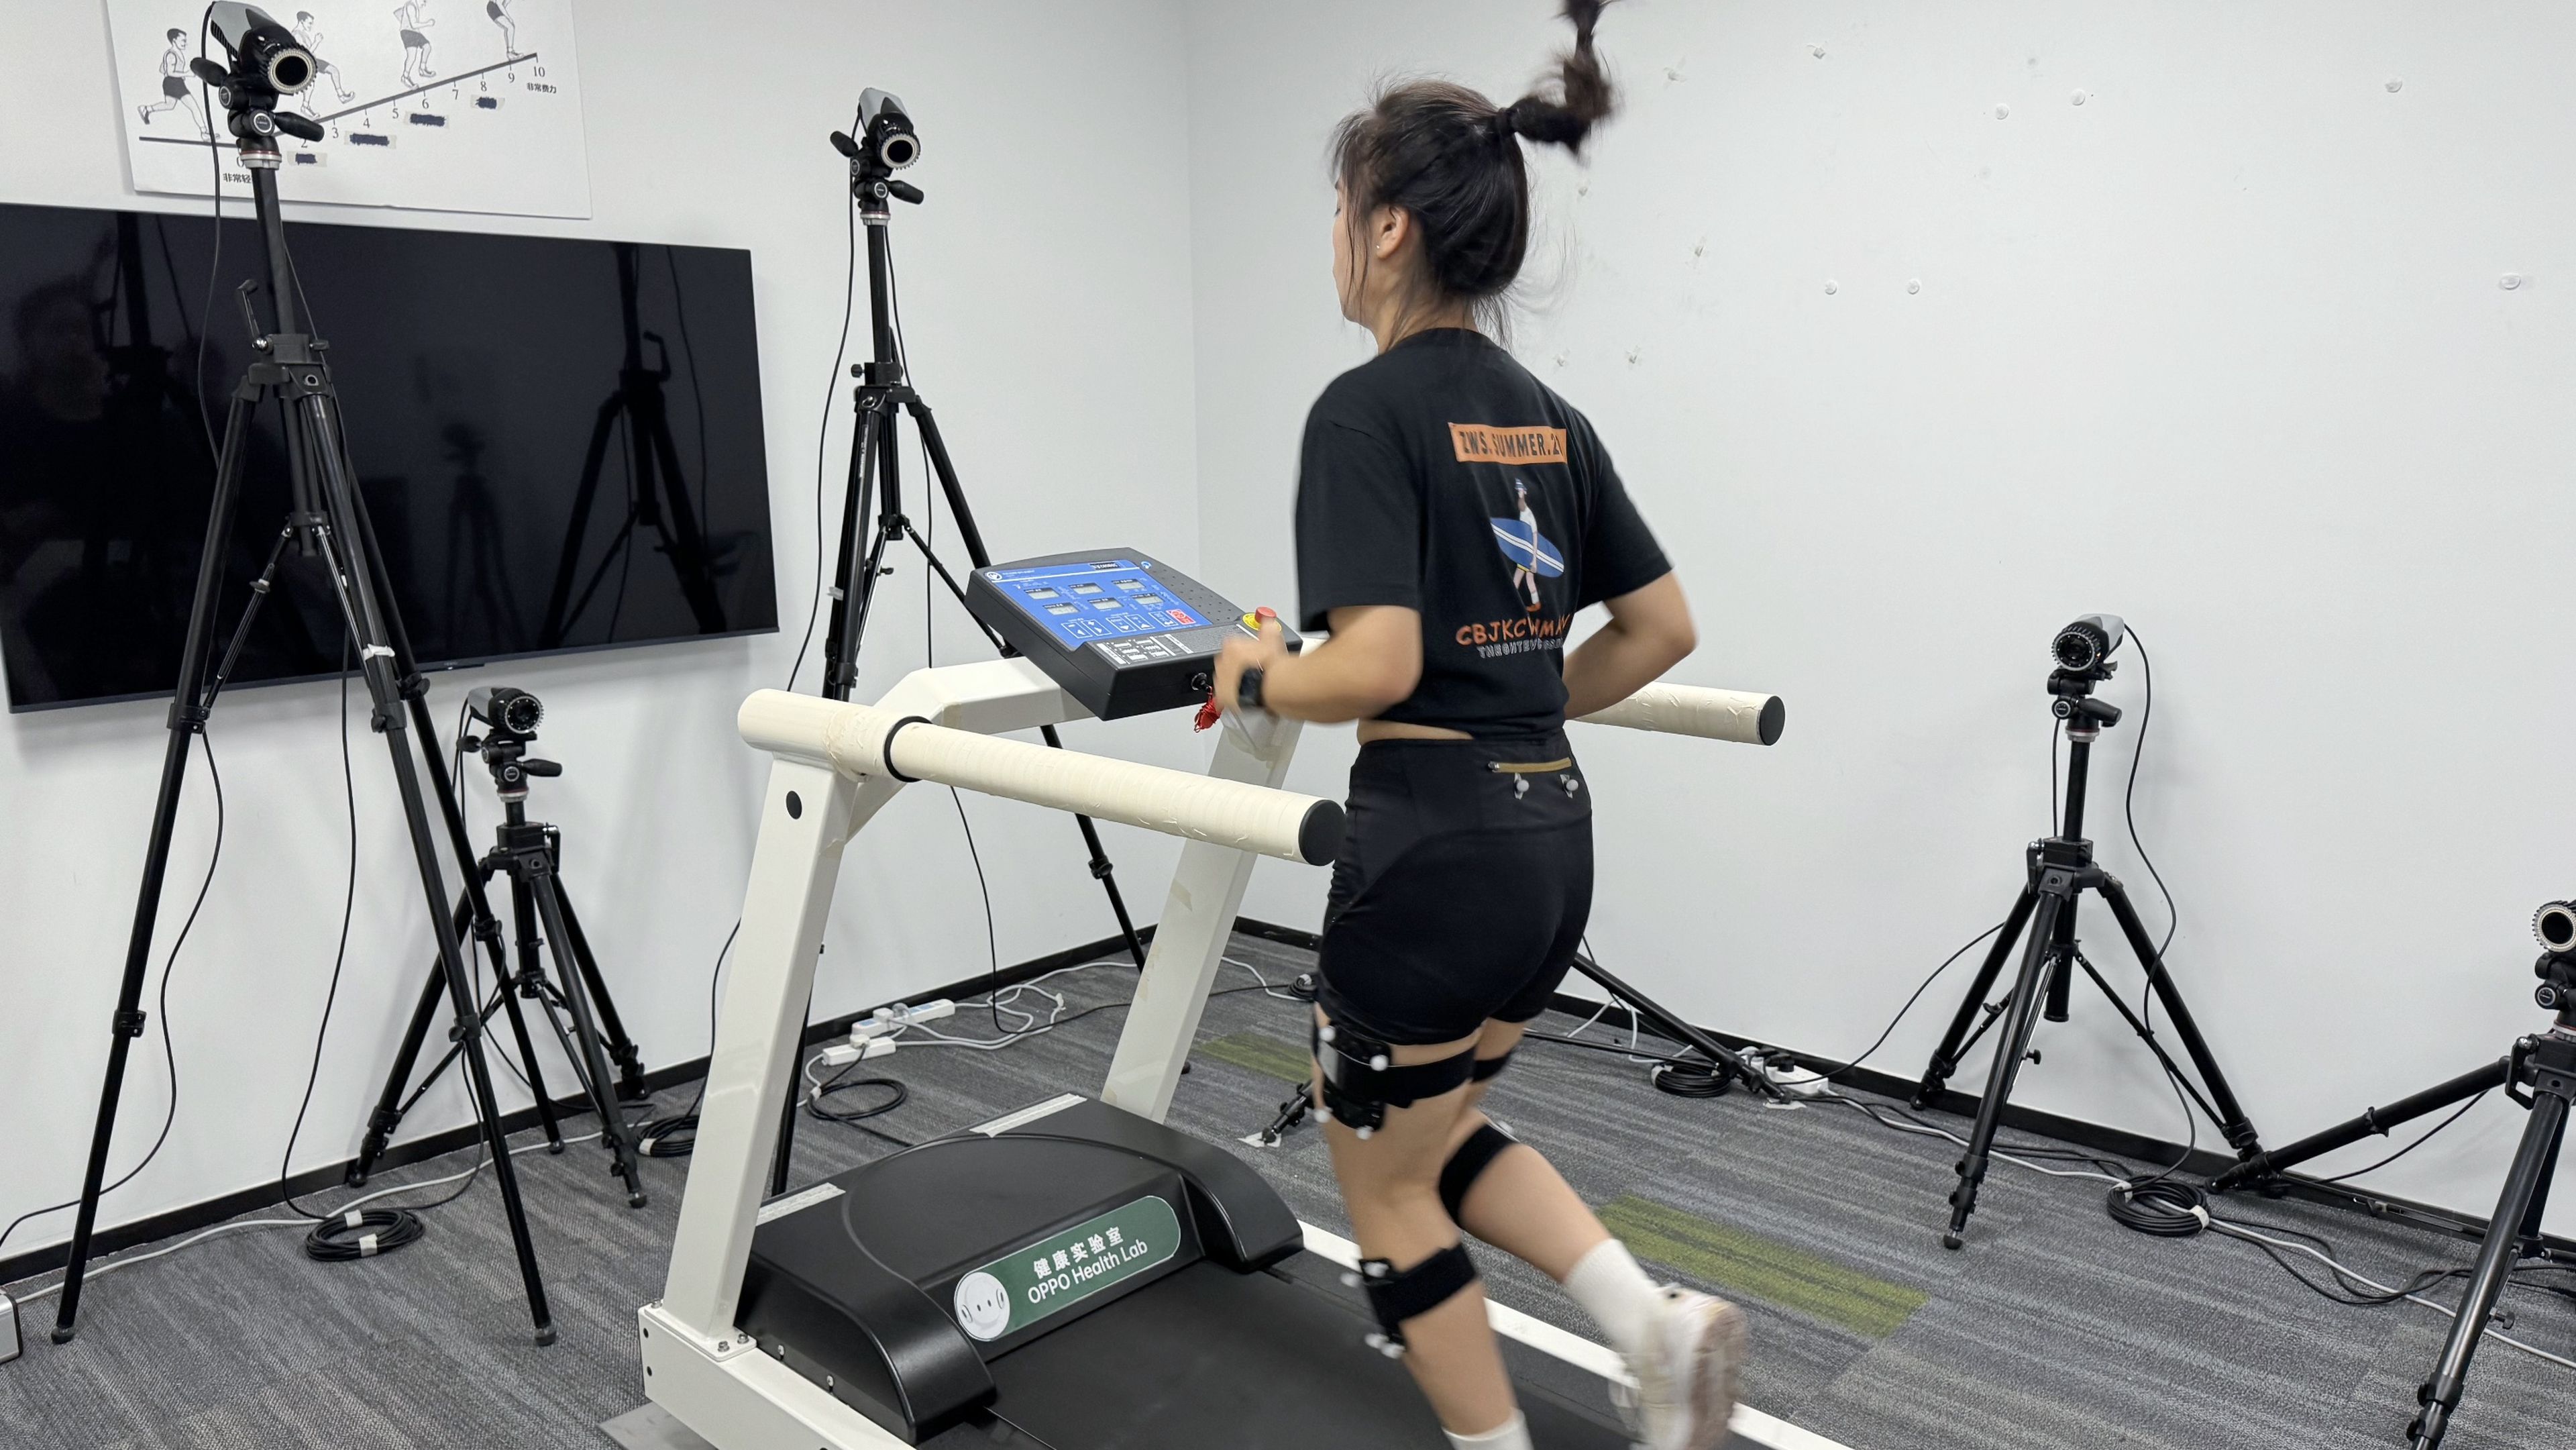 Una corredora cuenta con sensores en sus piernas para medir su lanzada, posición, cadencia y mucha información más recopilada por cámaras y sensores.